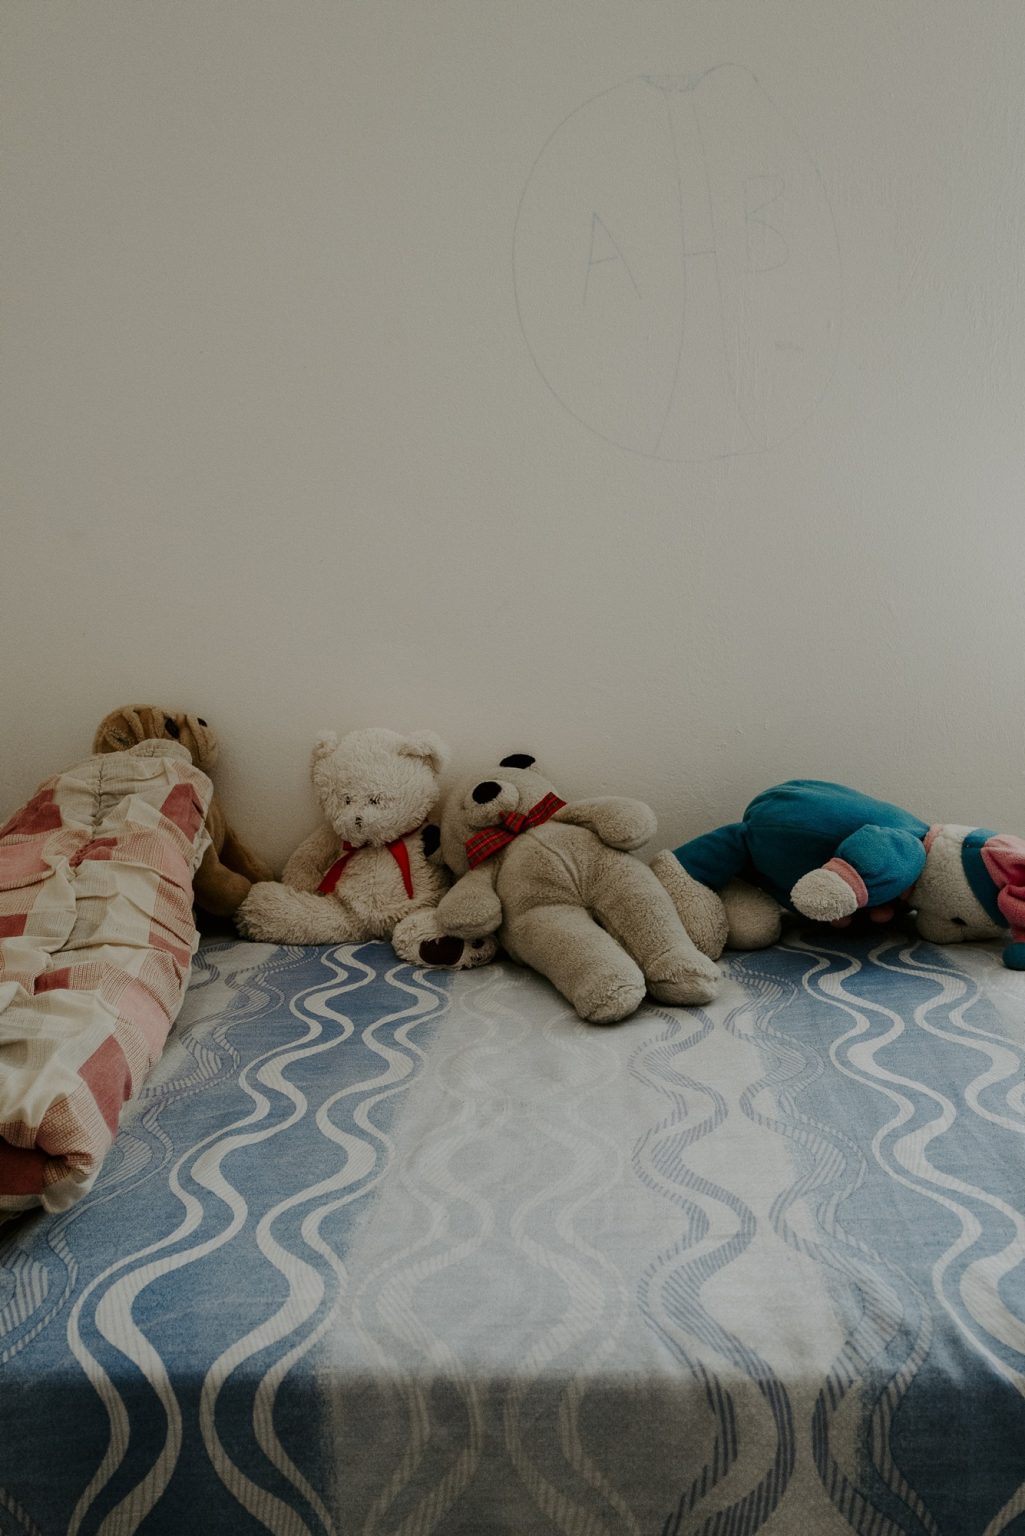 Canzano (Teramo), Abruzzo, June 2019 - Canzano shelter for refugees and asylum seekers.><
Canzano (Teramo), Abruzzo, giugno 2019 - CAS Canzano (Centro di accoglienza straordinaria di richiedenti asilo e rifugiati).